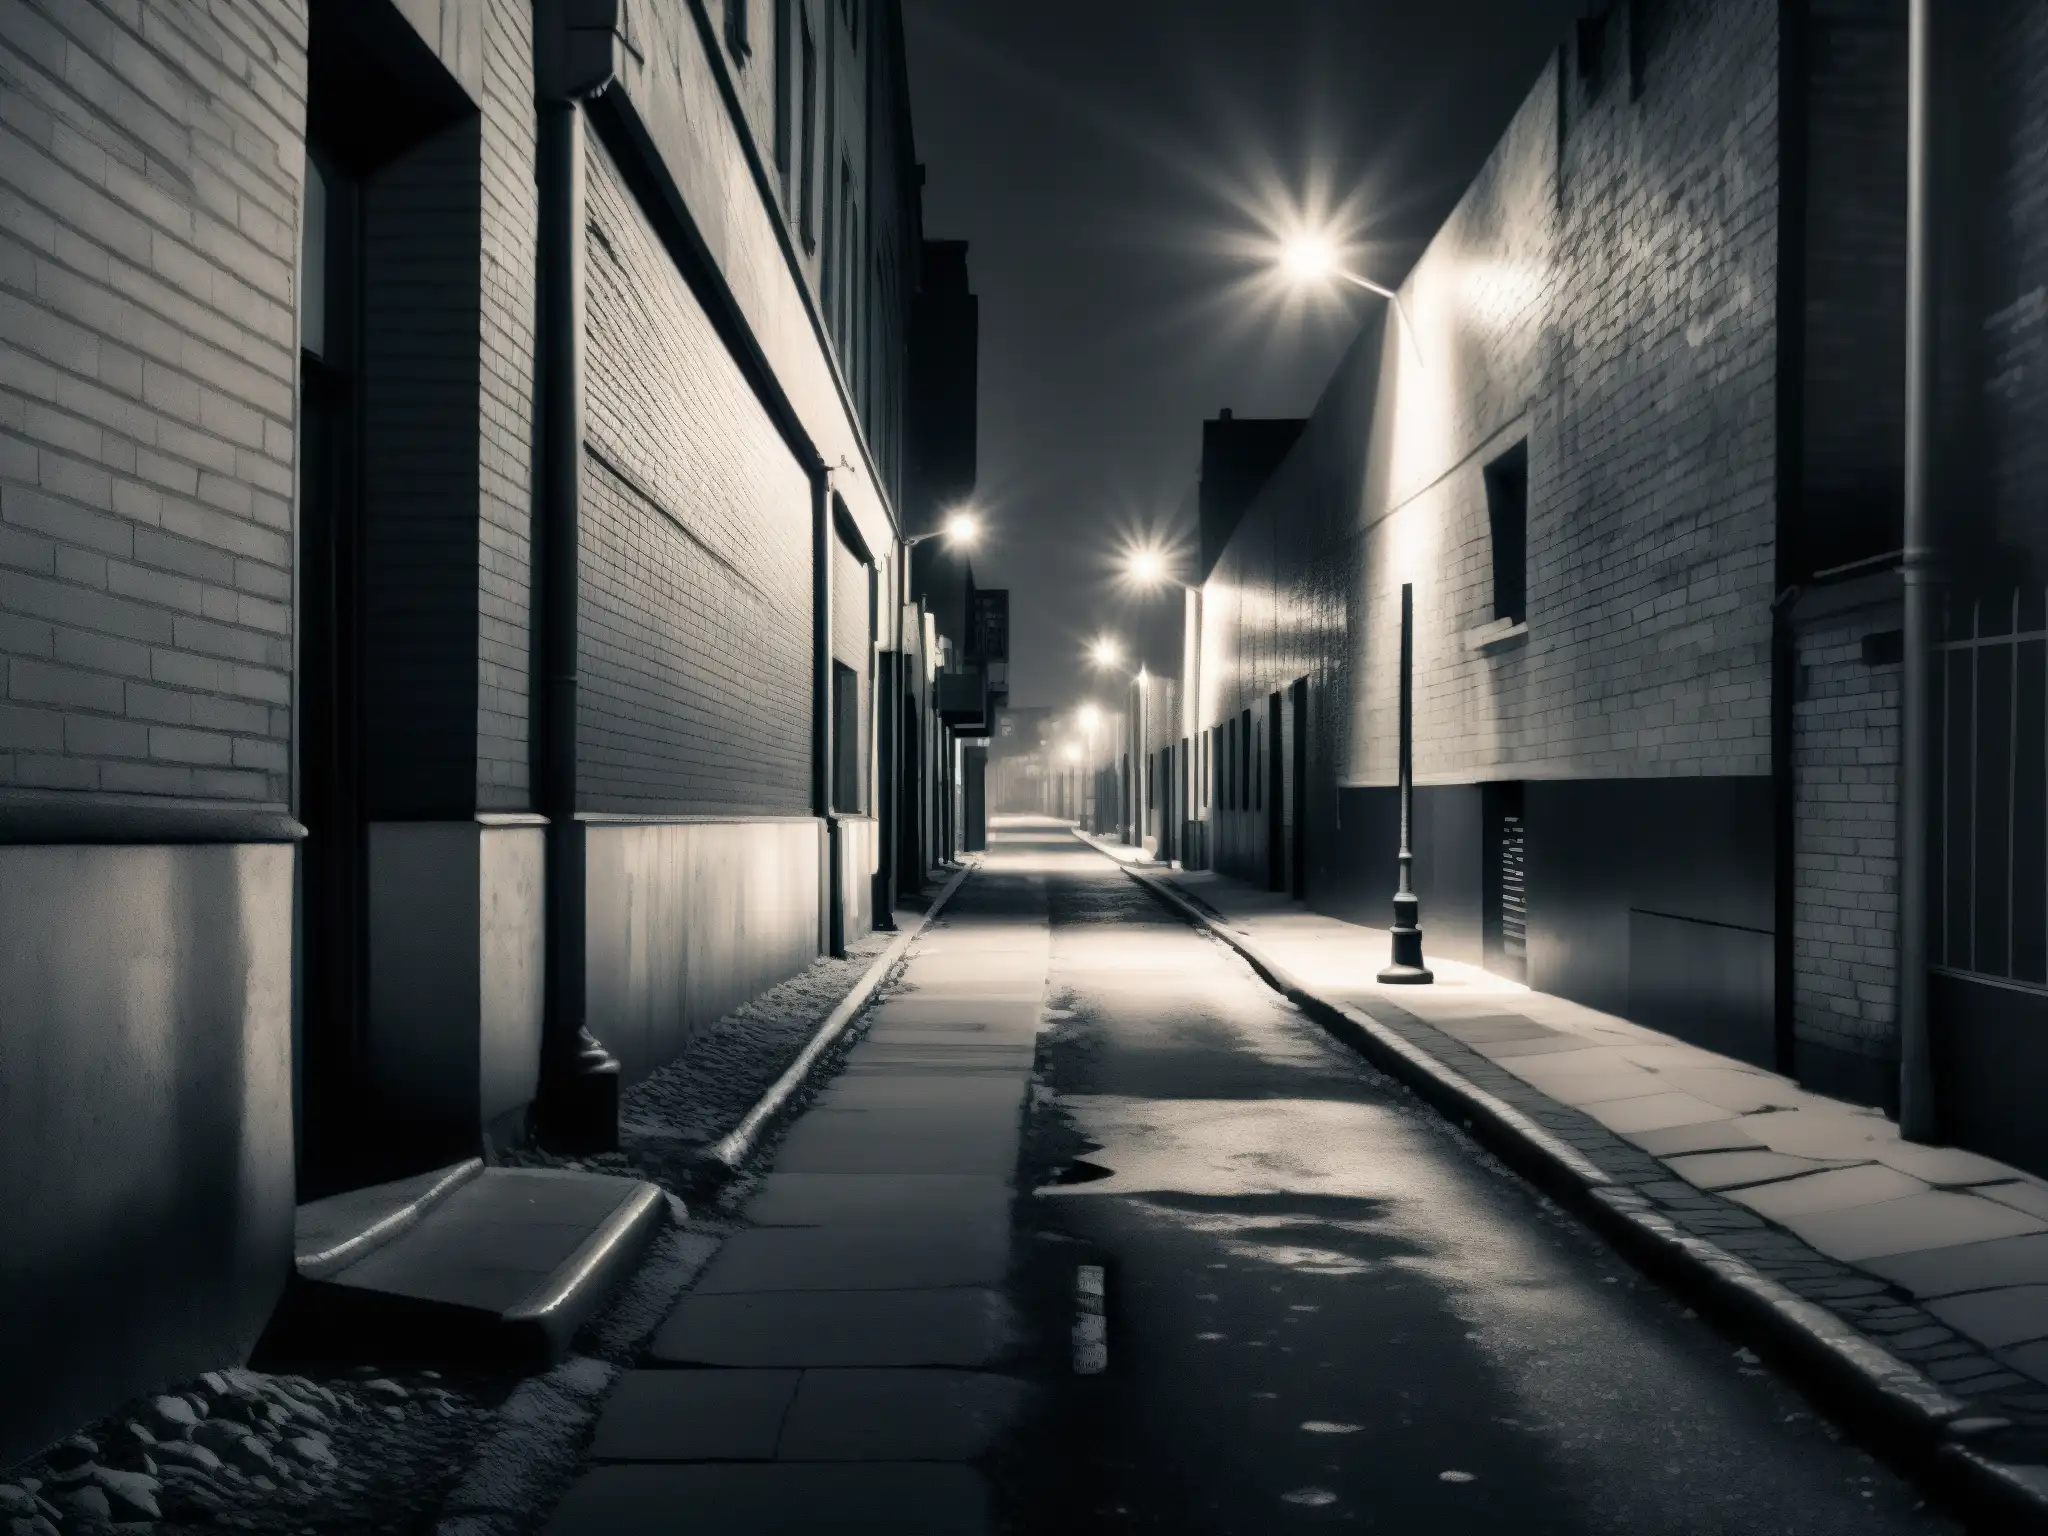 Un callejón urbano desolado en blanco y negro, iluminado por lámparas tenues